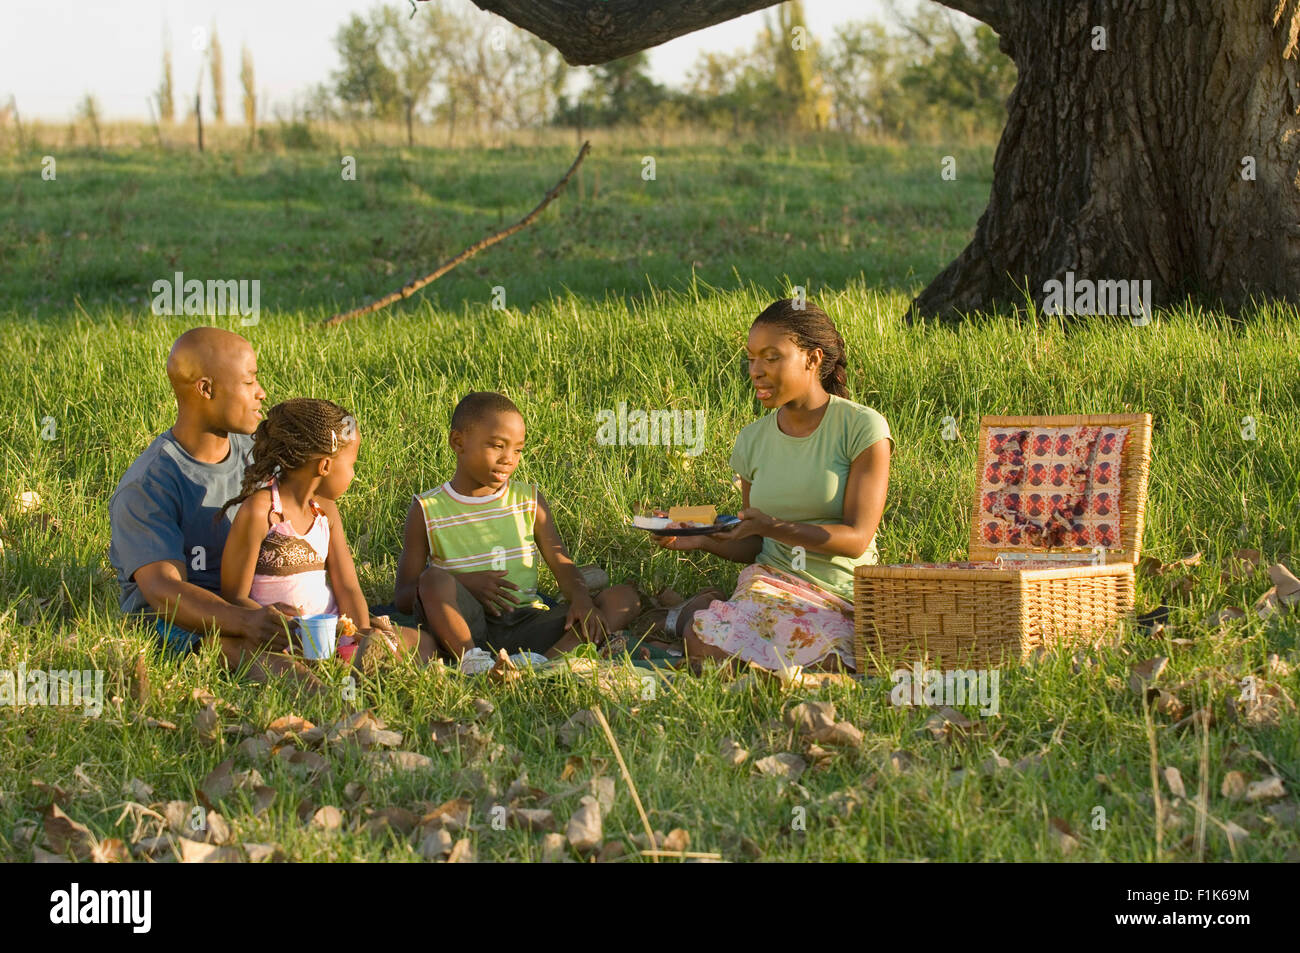 Family having a picnic Stock Photo